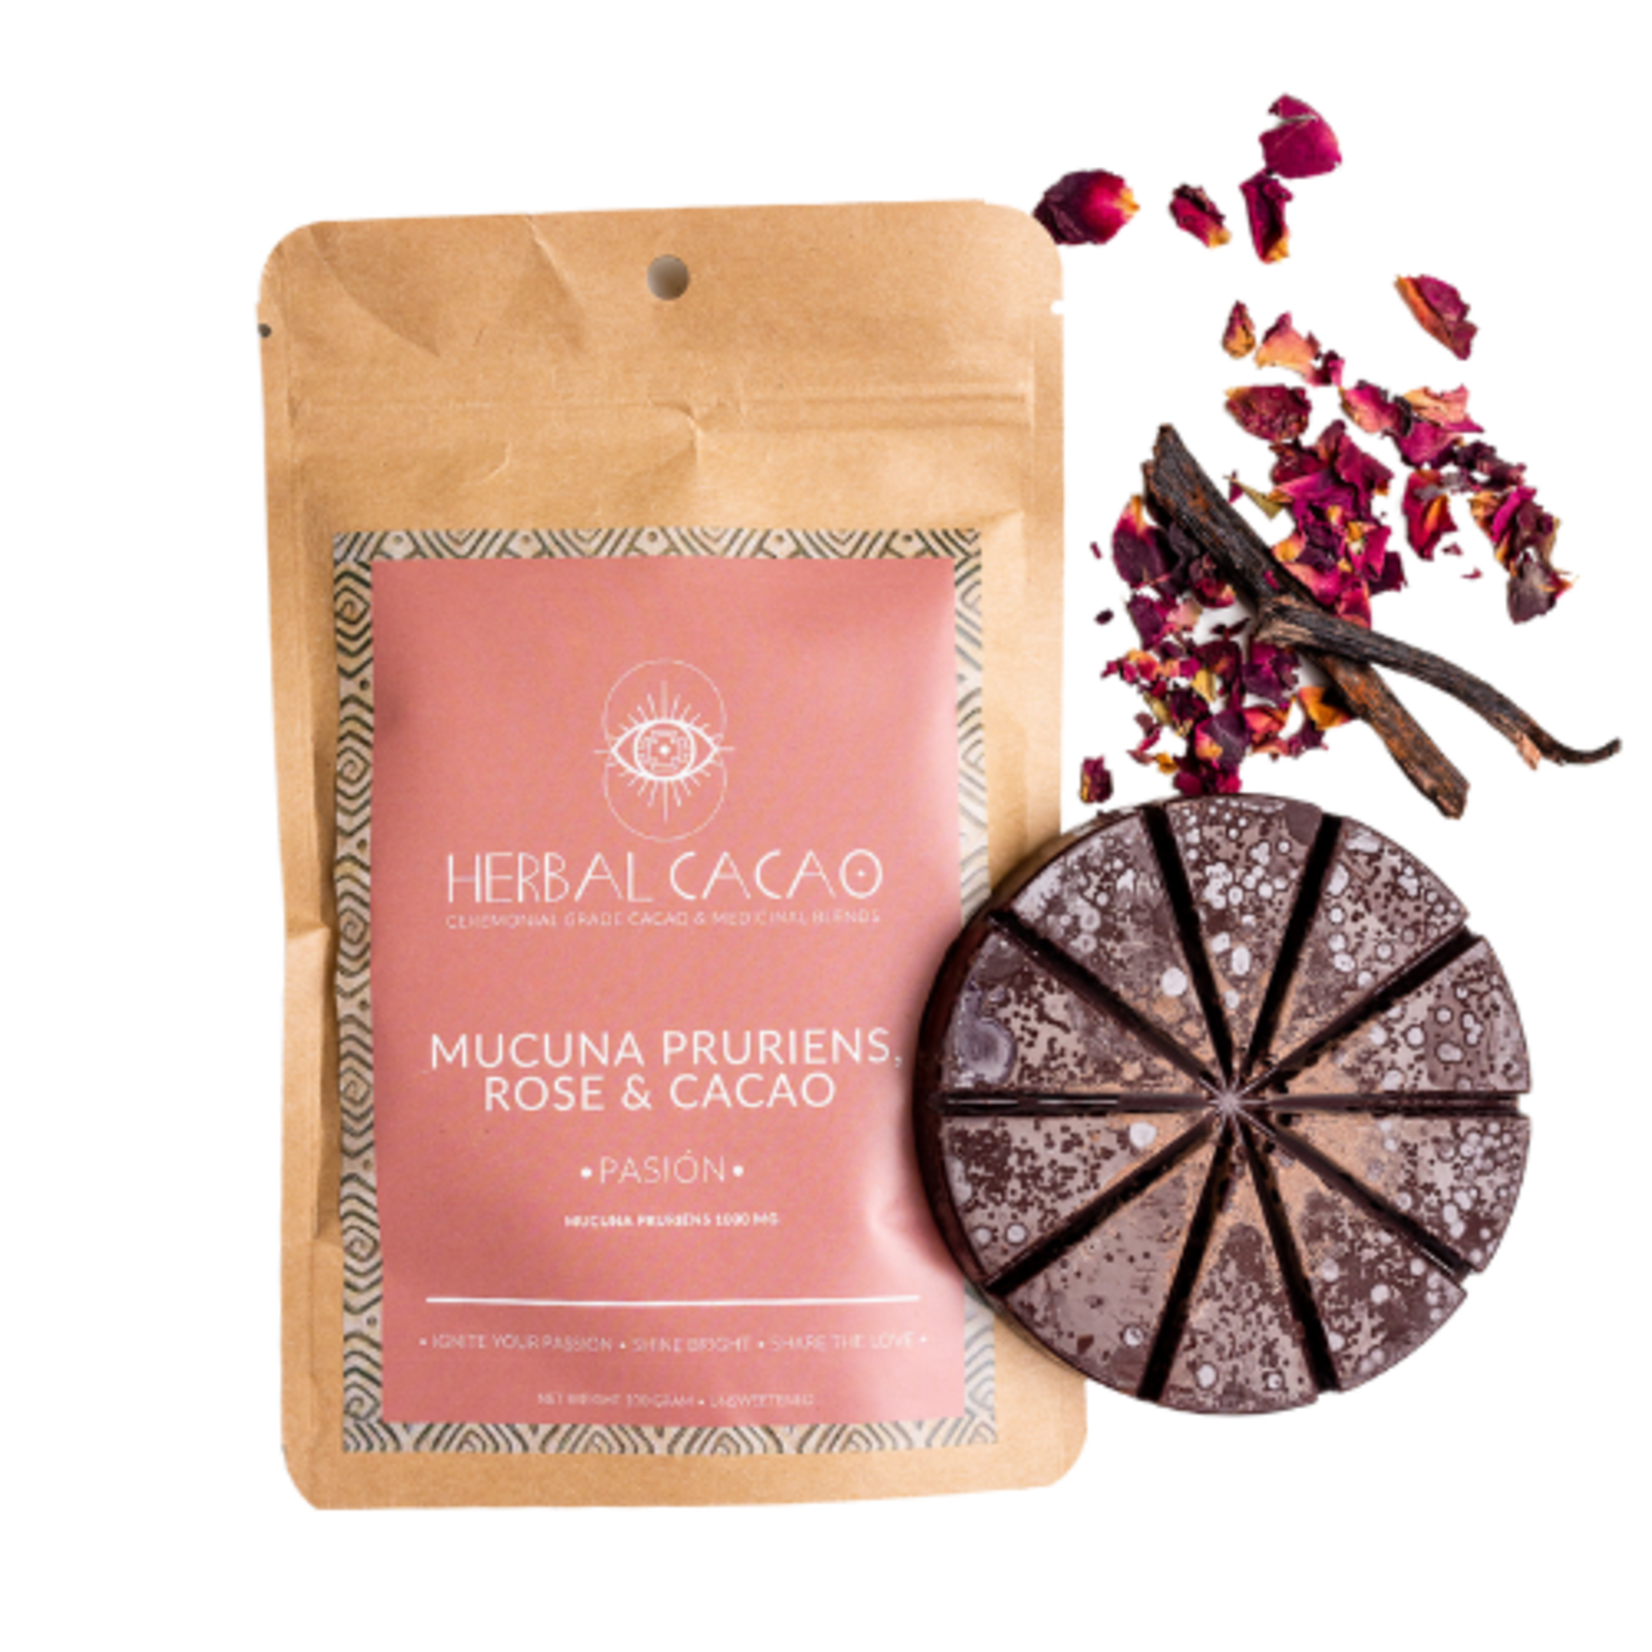 Herbal Cacao "Pasión" Mucuna & Cacao Rose Vanilla